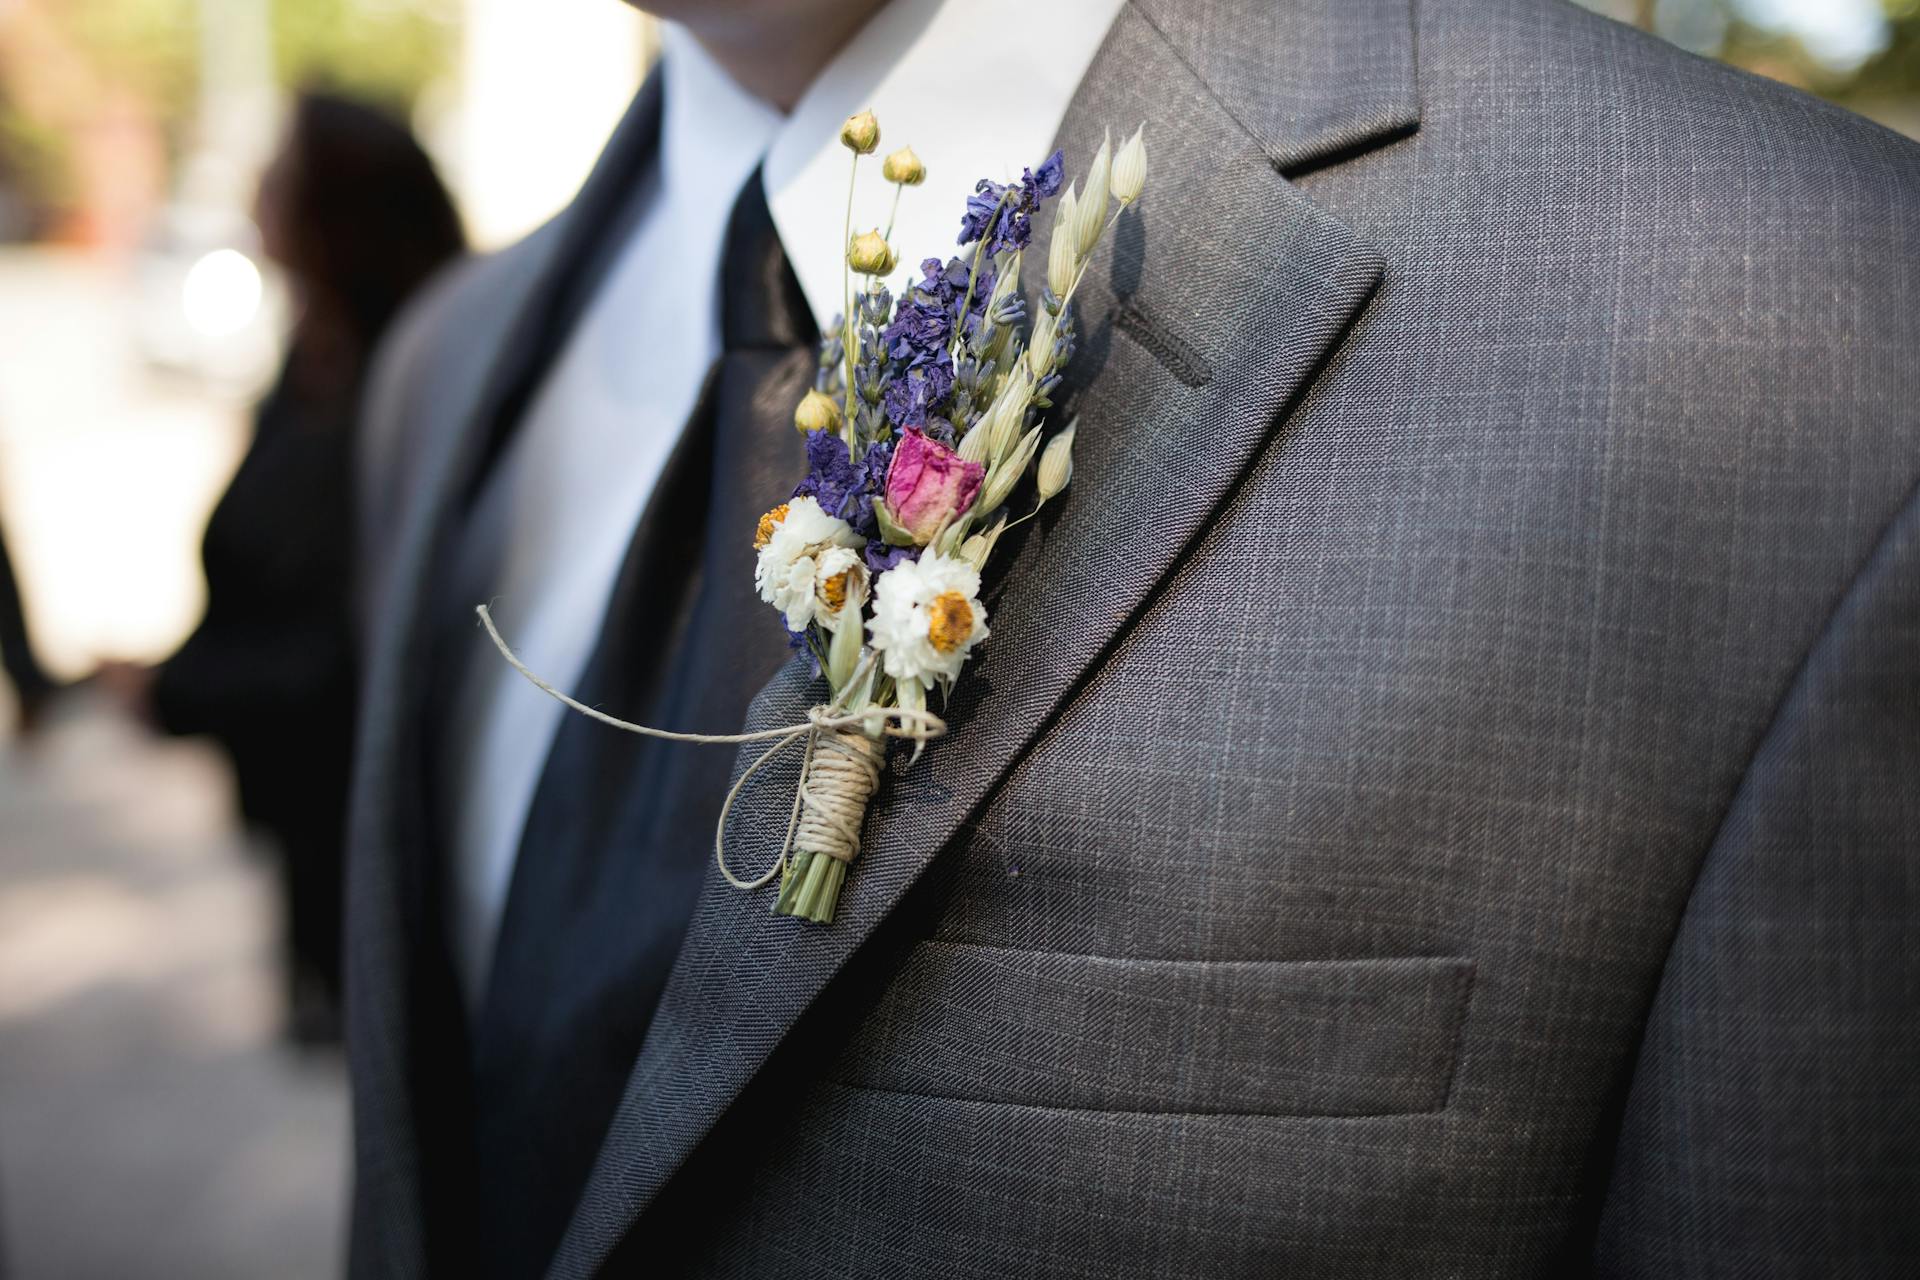 Eine Blumenboutonniere auf der grauen Anzugsjacke des Bräutigams | Quelle: Pexels